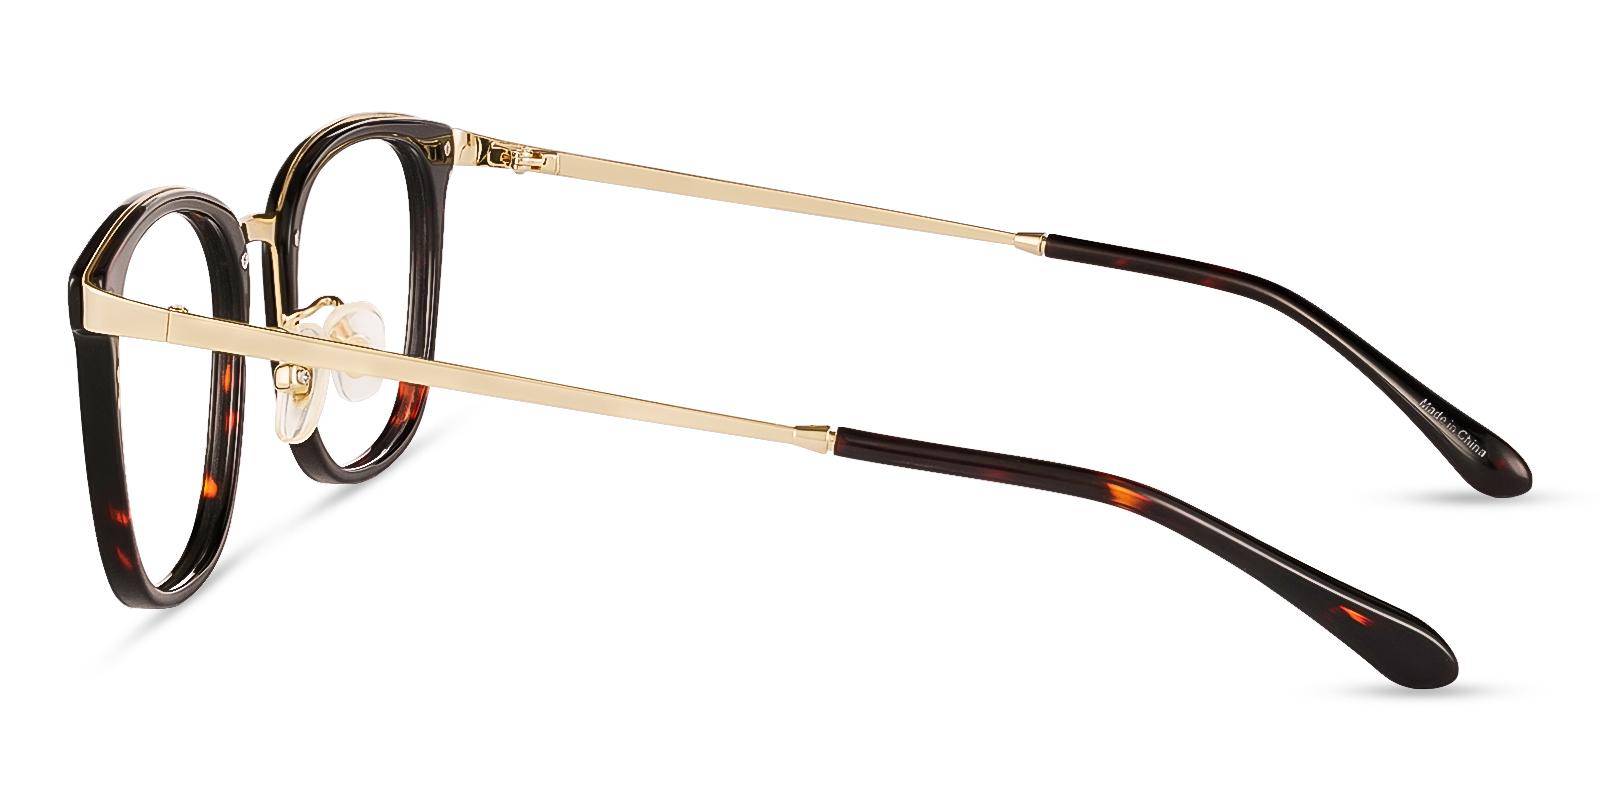 Explorer Tortoise Metal Eyeglasses , NosePads Frames from ABBE Glasses